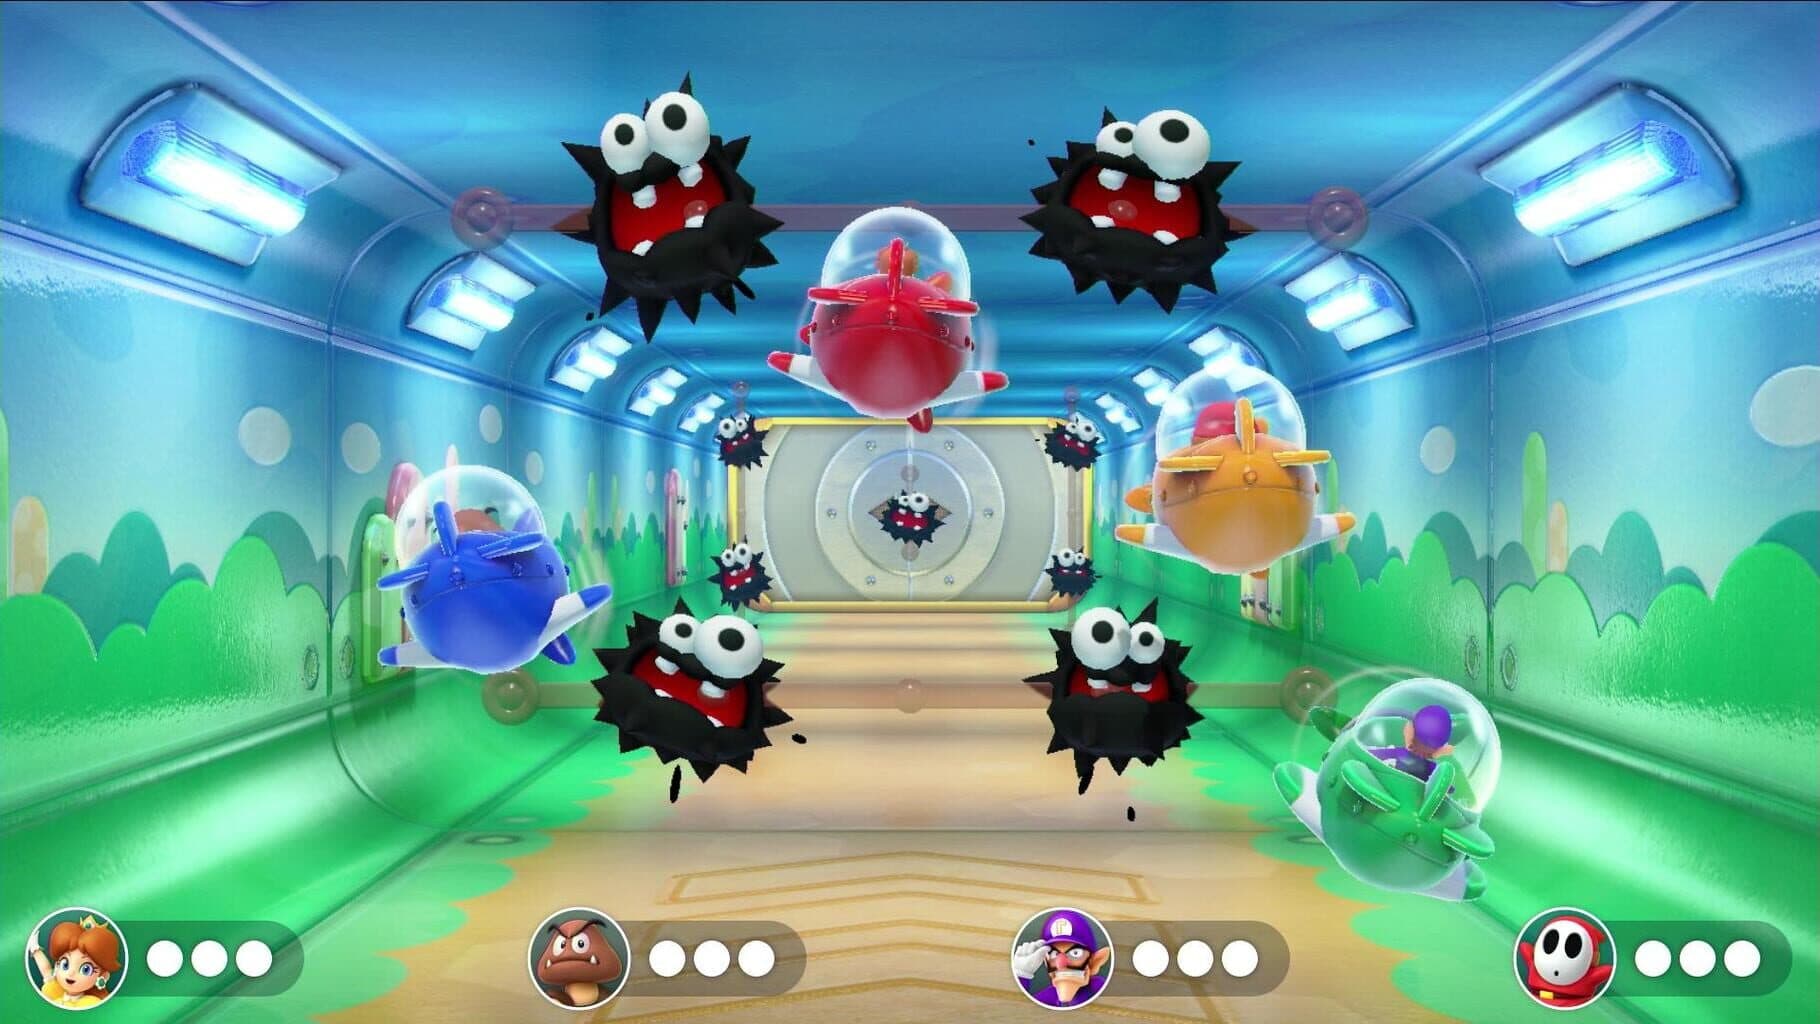 Super Mario Party Image